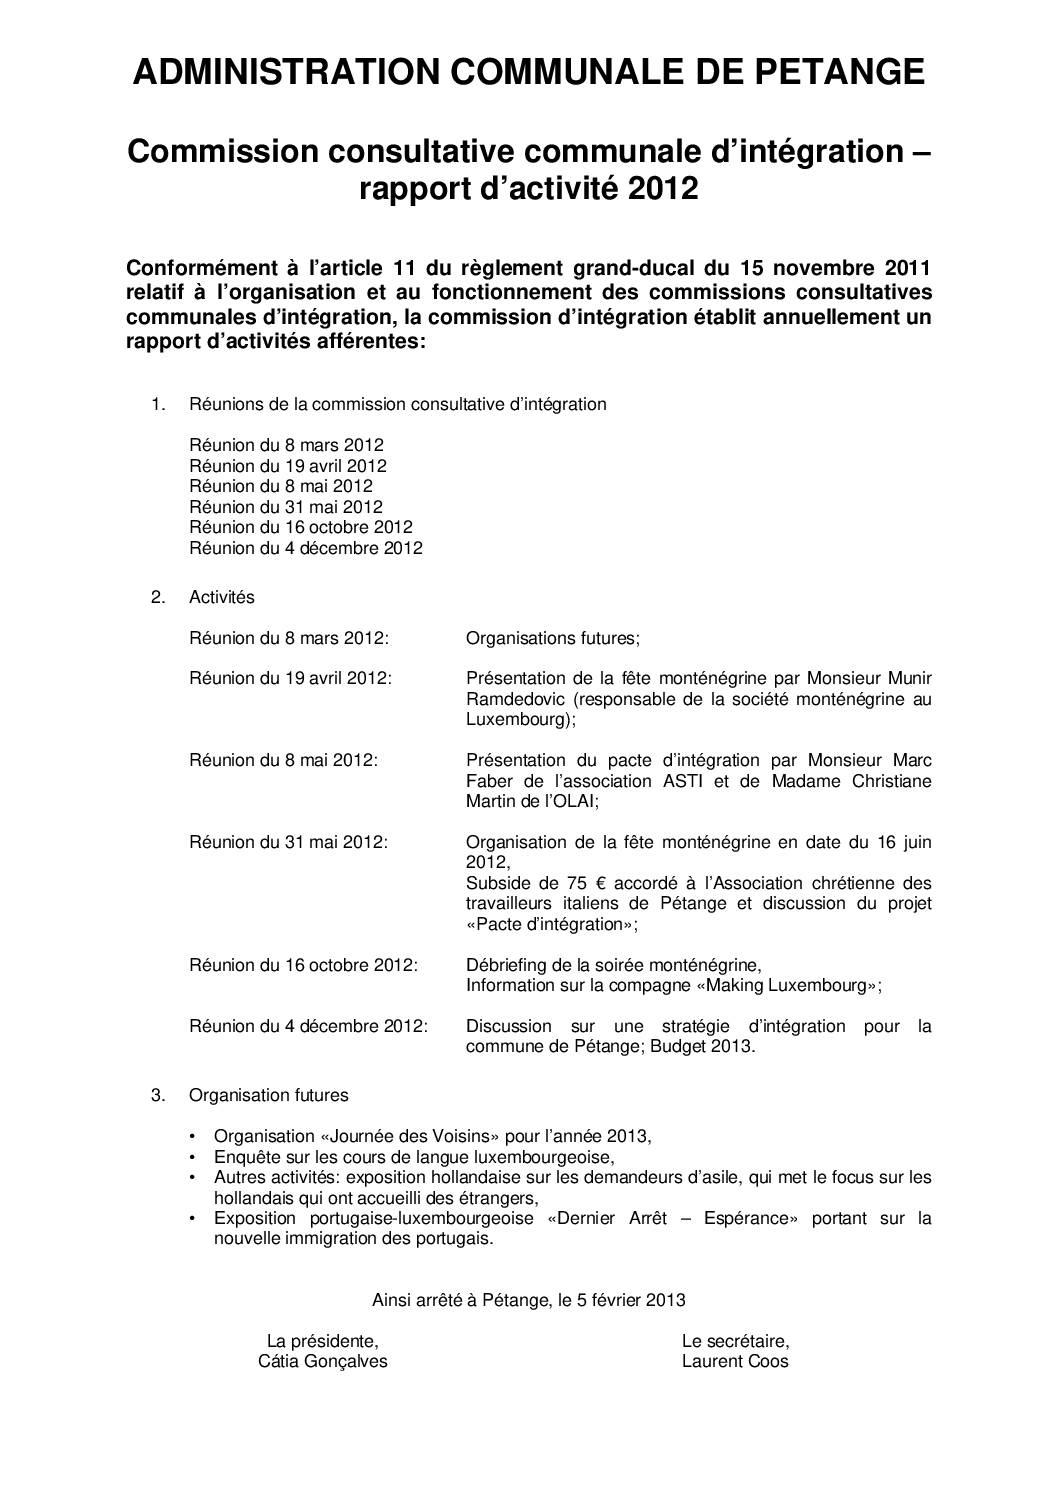 Commission d'intégration de la commune de Pétange - Rapport annuel 2012